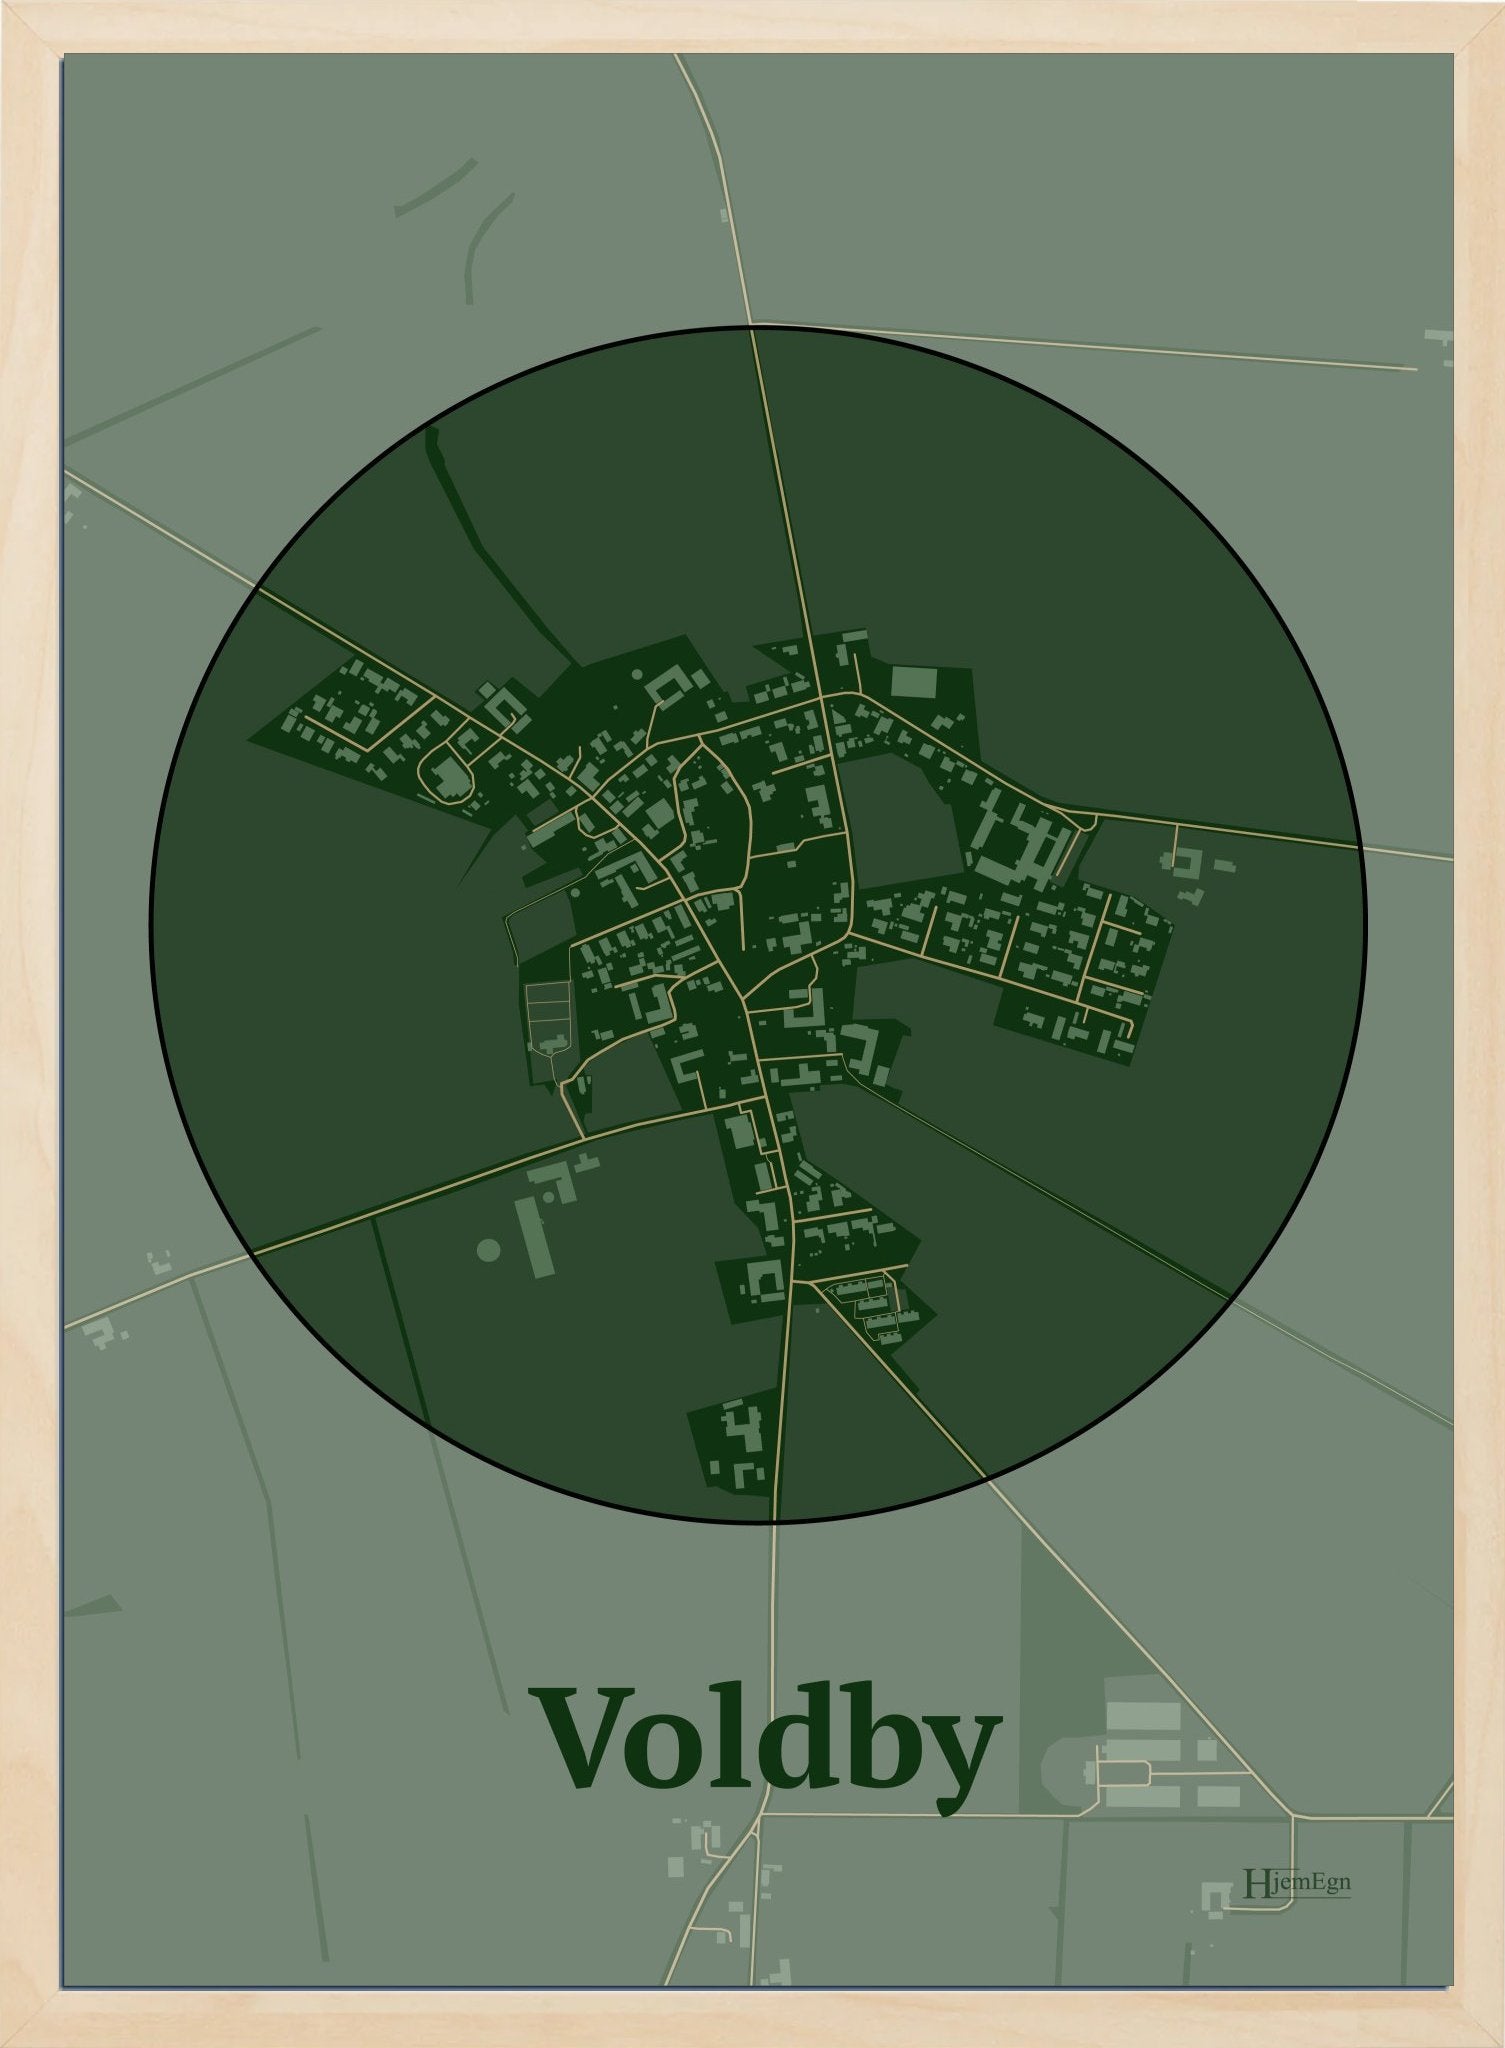 Voldby plakat i farve mørk grøn og HjemEgn.dk design centrum. Design bykort for Voldby